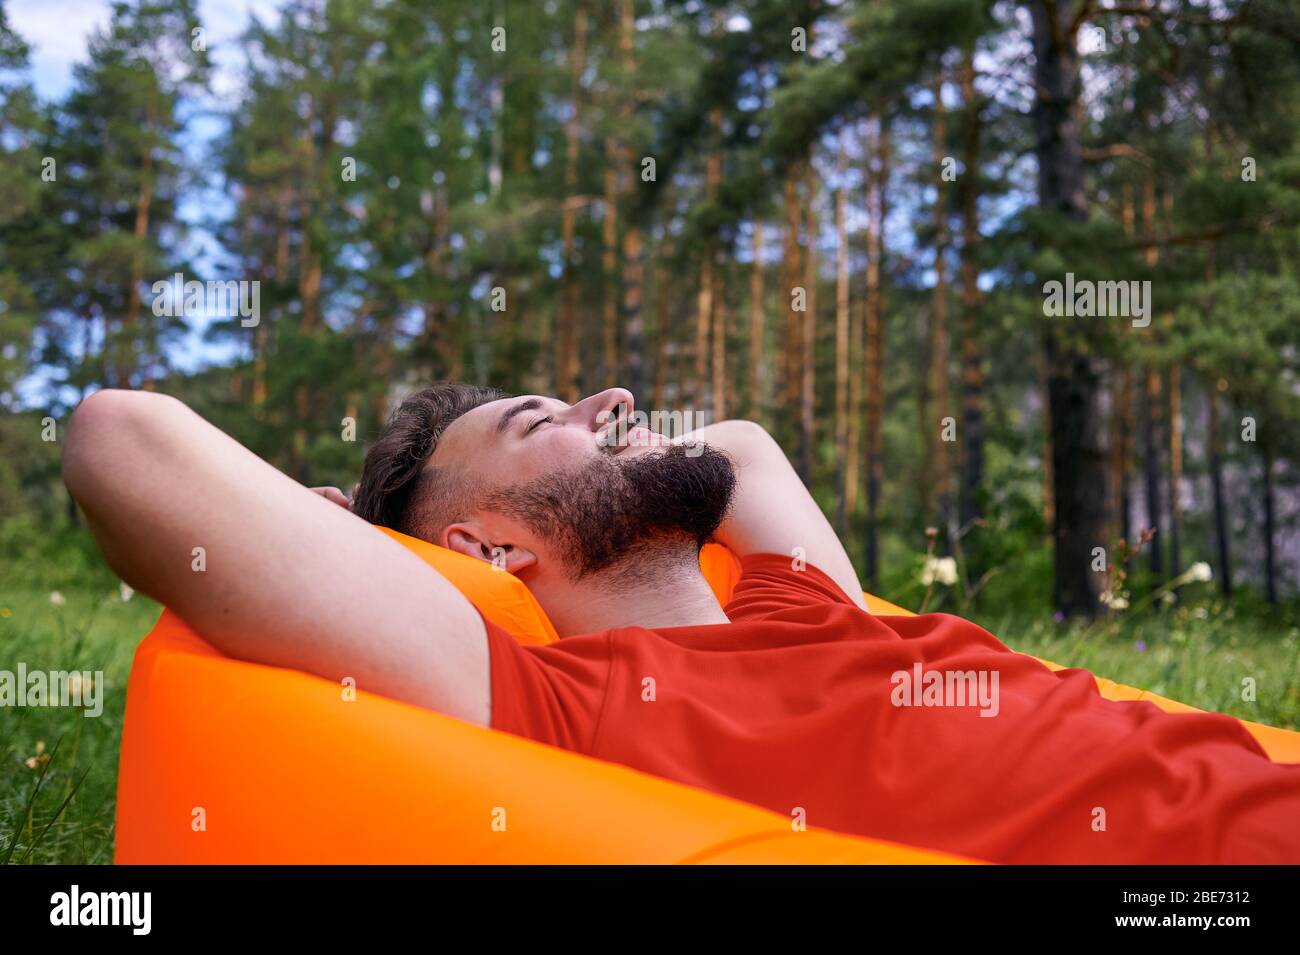 Disfrutar de la vida. Un joven se encuentra en un bivouac en el bosque., relajación, vacaciones, concepto de estilo de vida Foto de stock